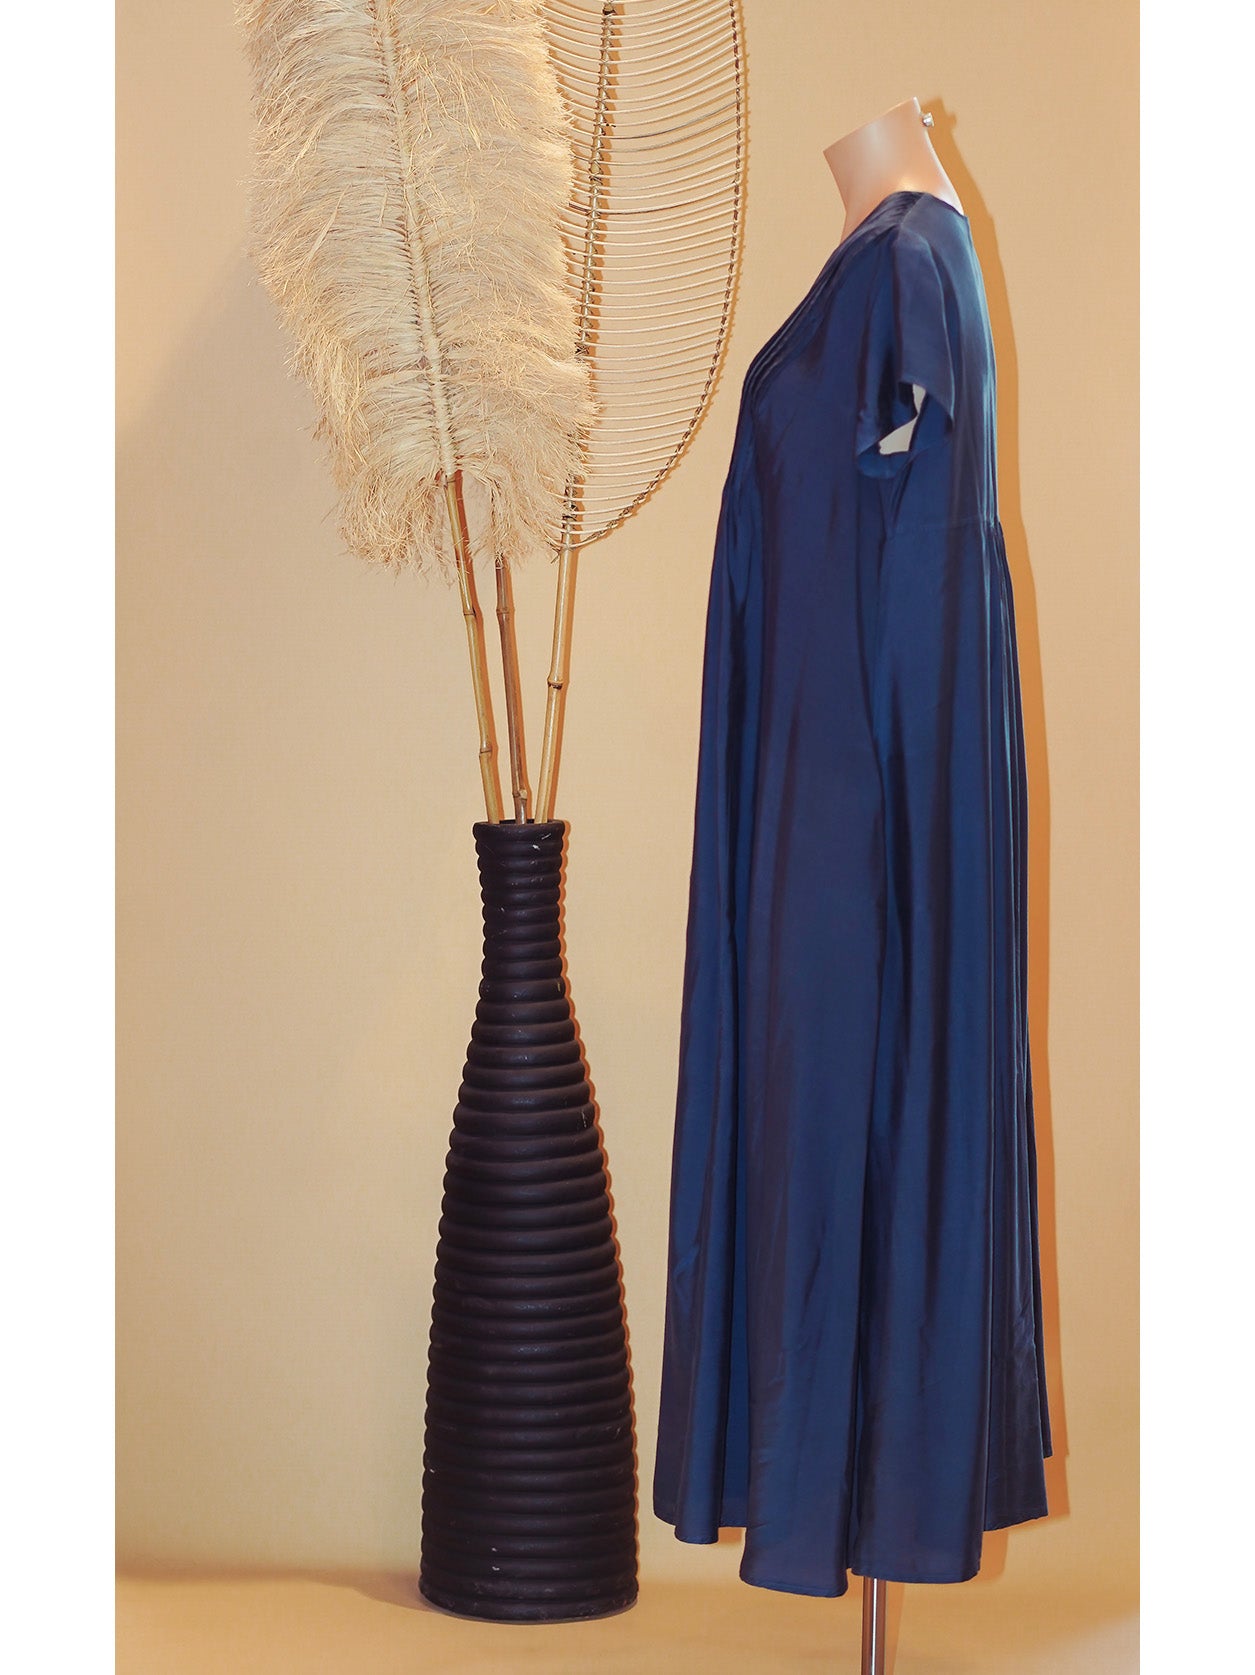 Kleid Silk/Bamboo